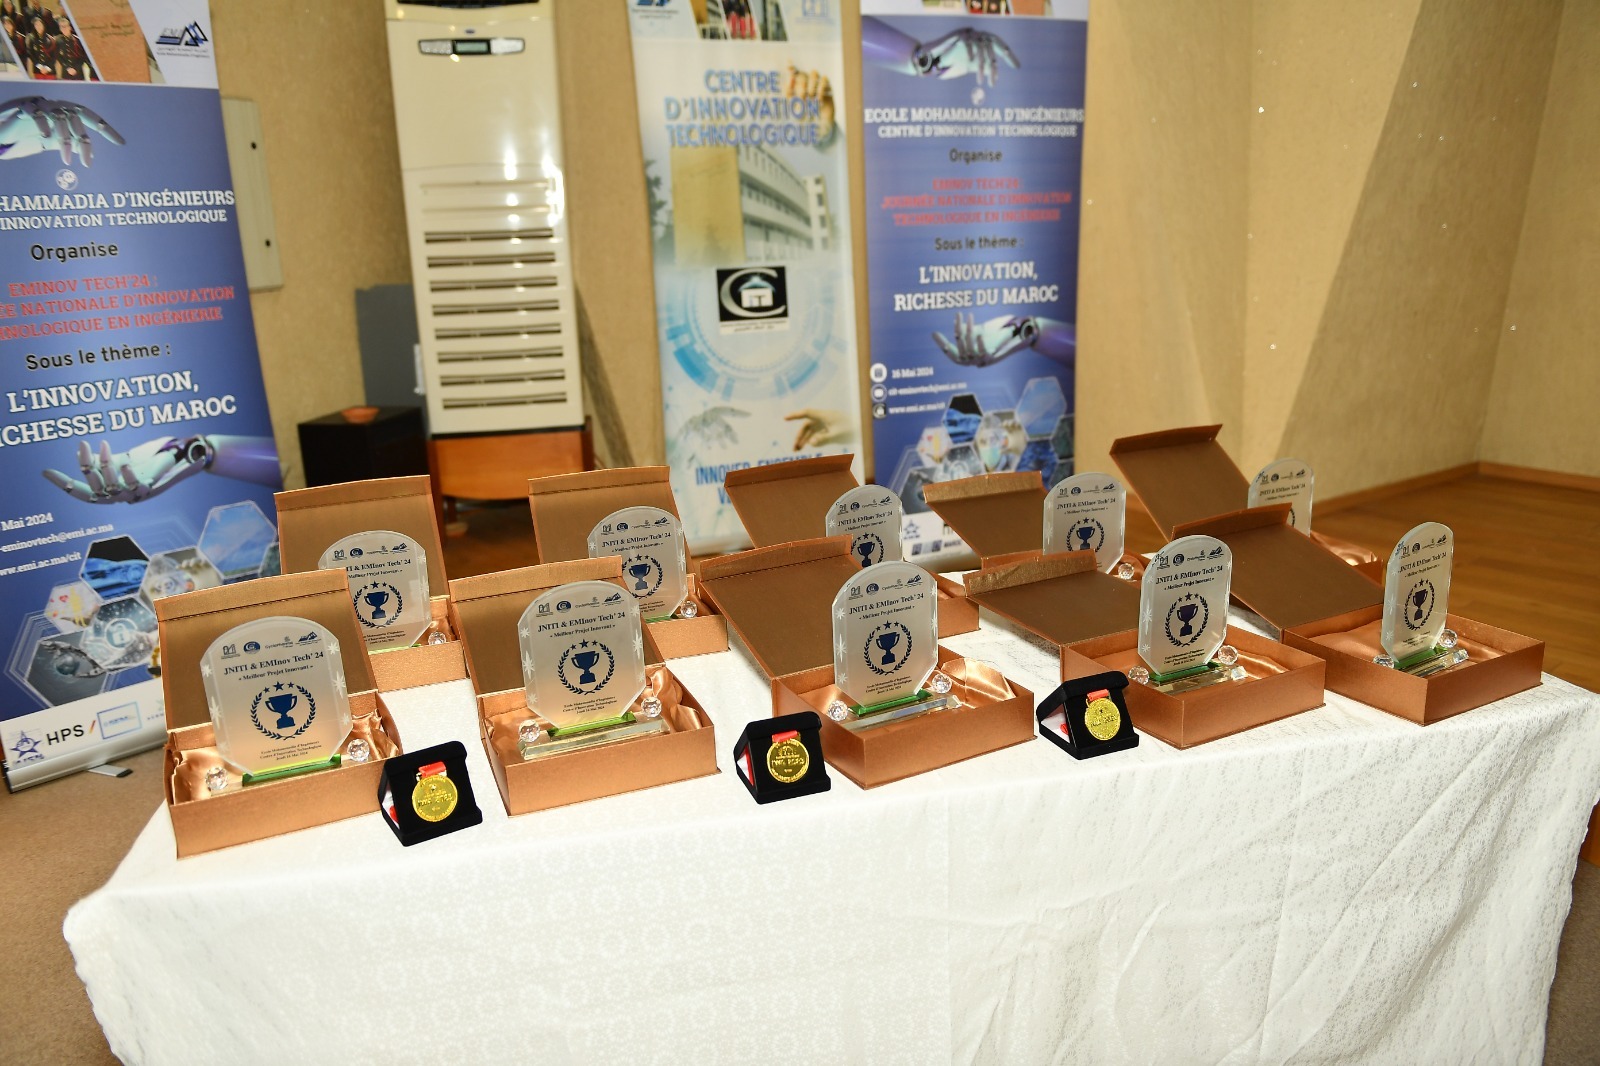 توزيع الجوائز على المشاركين الذين مثلوا مدارس المهندسين والكليات والمعاهد في الدورة الثالثة لليوم الوطني للابتكار